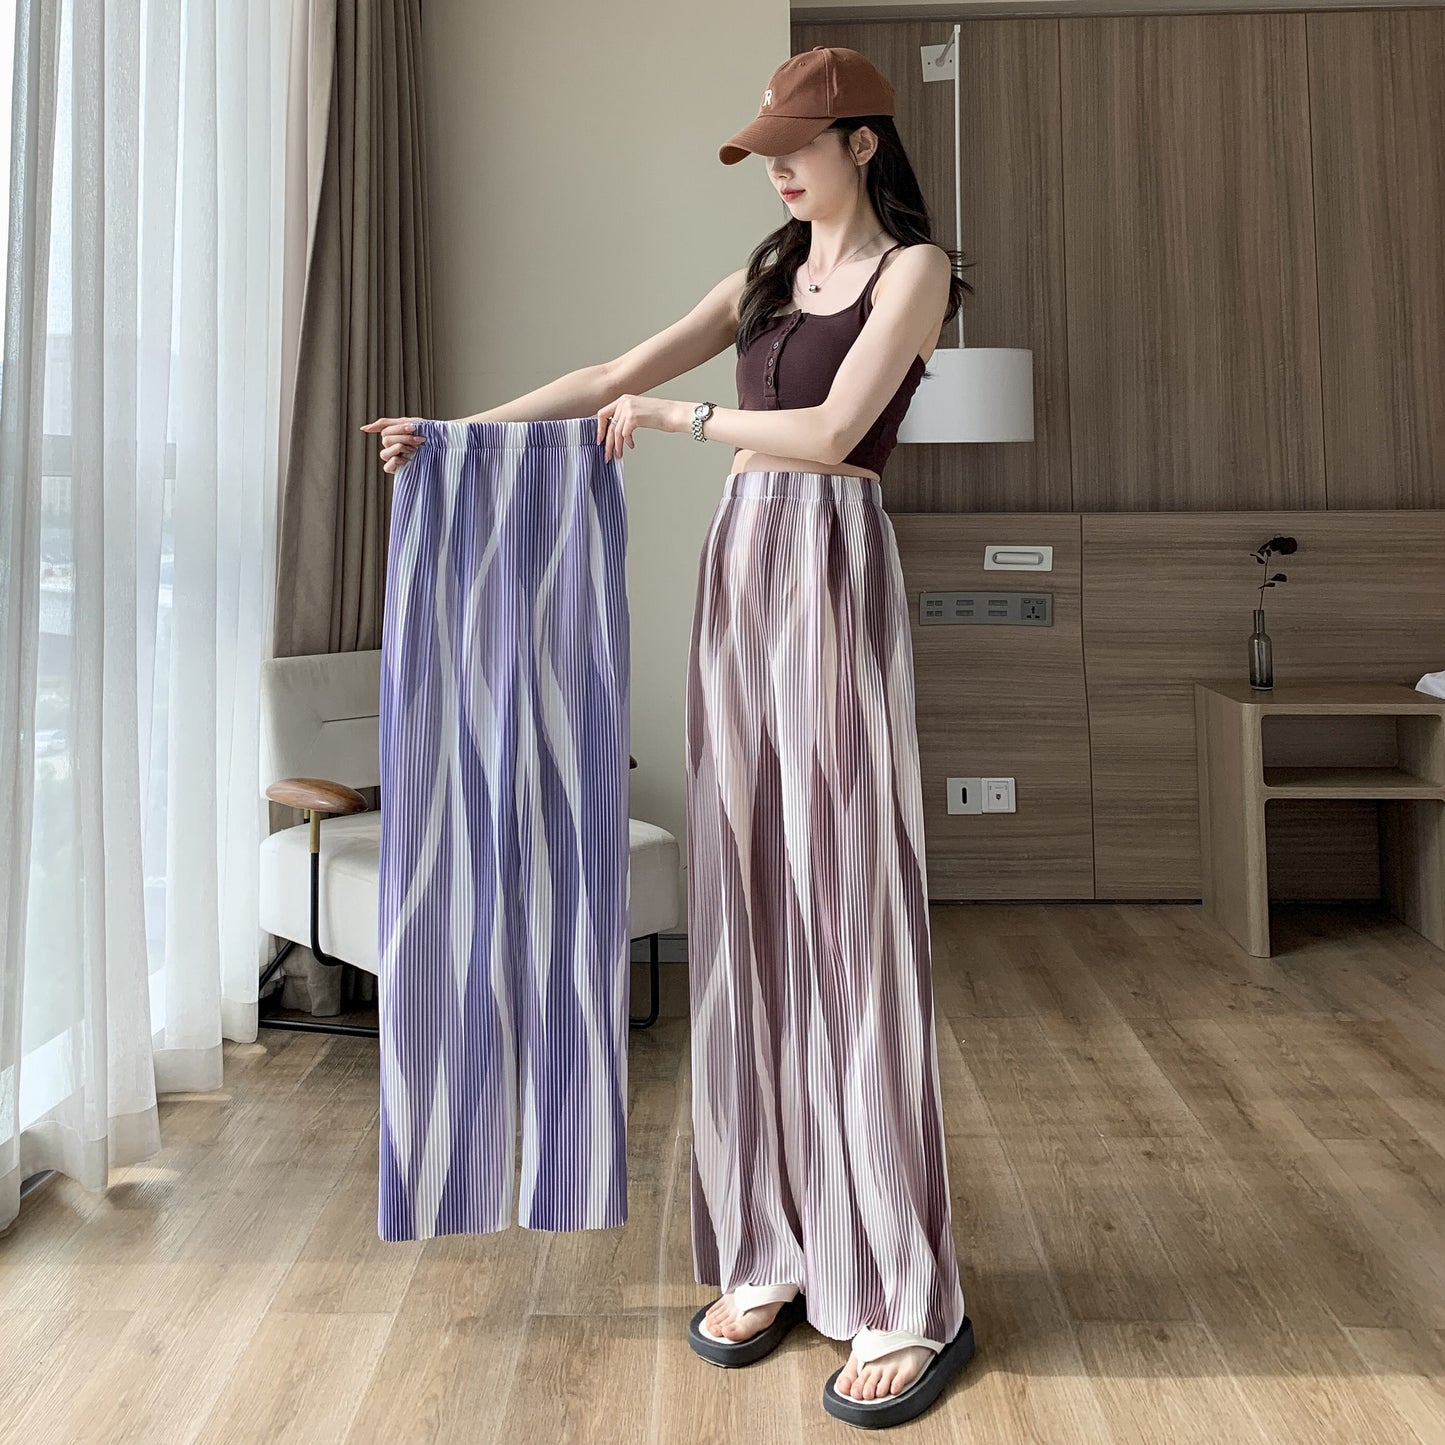 Pantalones largos de seda helada con estampado de anudado teñido, estilo casual de talle alto y pliegues rectos.